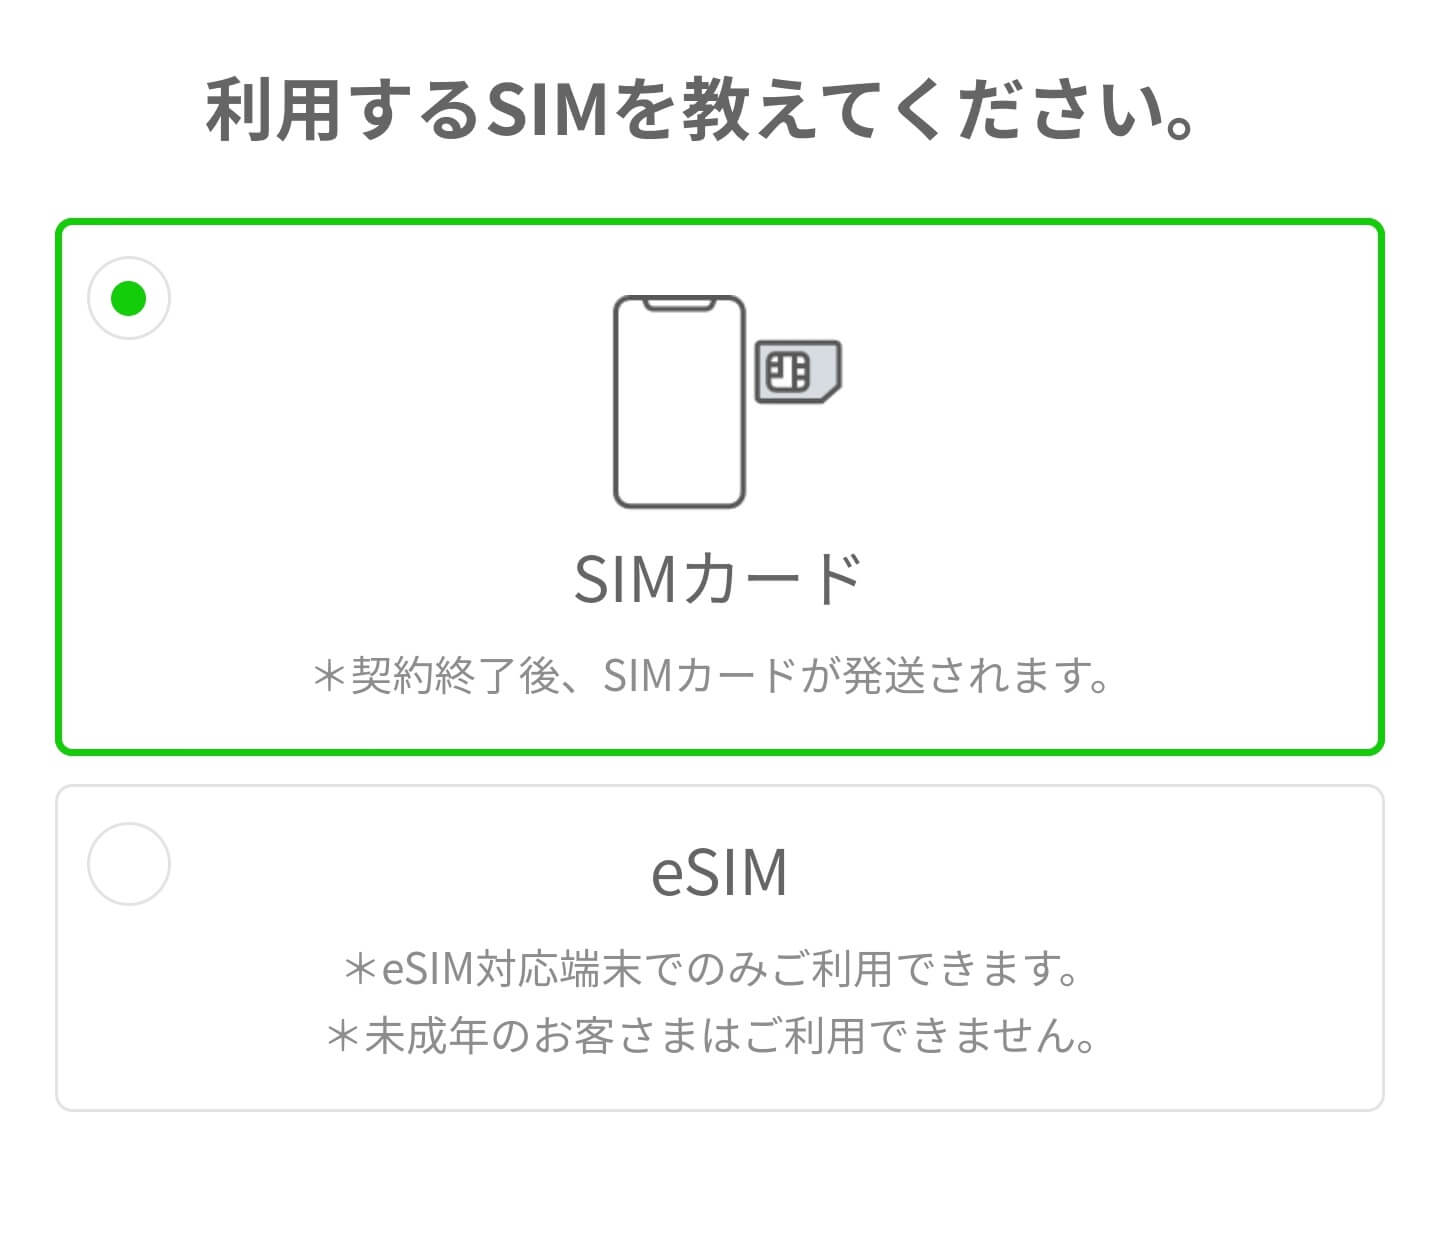 linemo-application-5 絶対に格安SIM選びで失敗しないLINEMO(ラインモ)の解説サイト